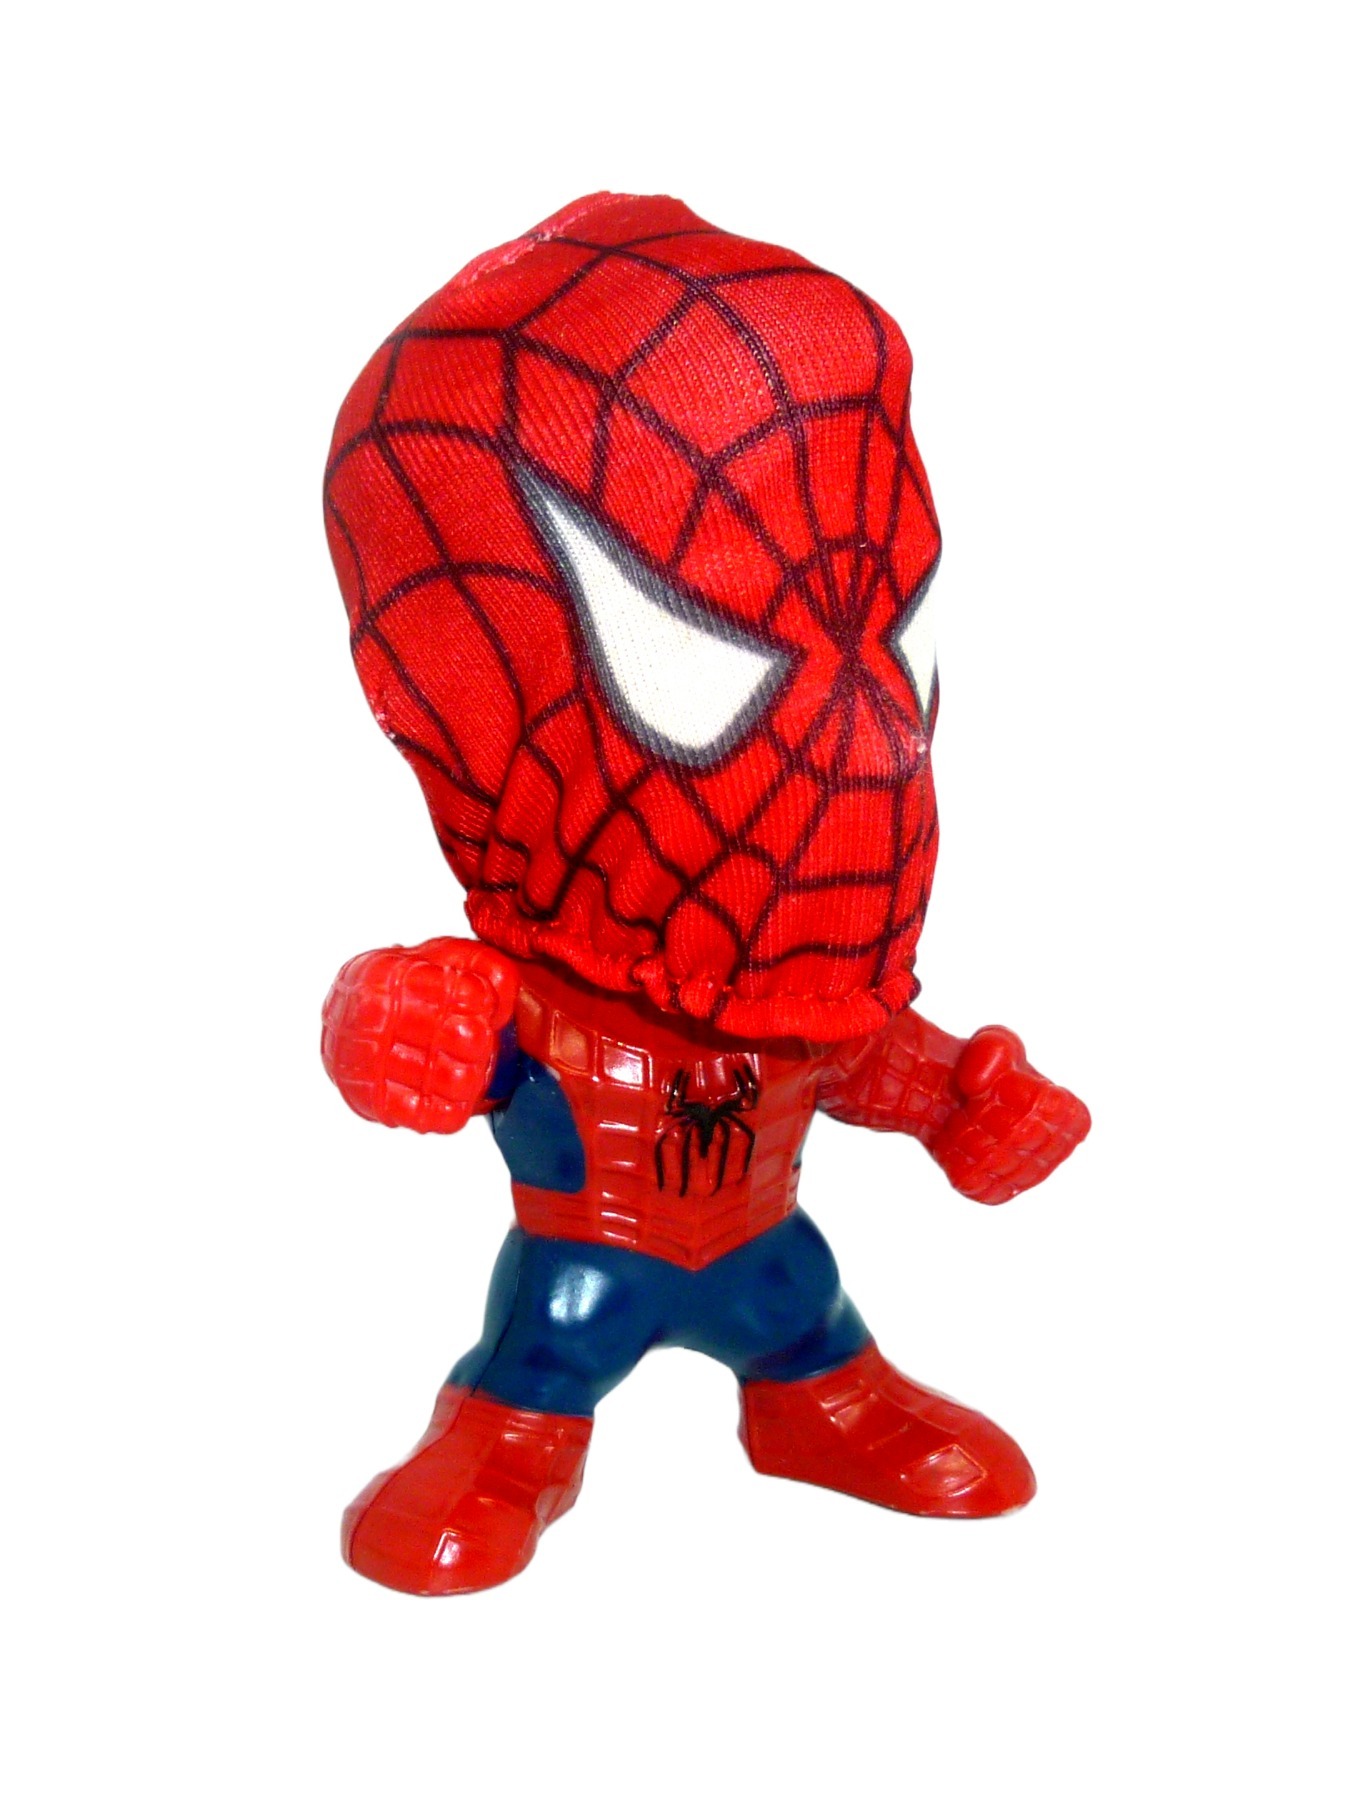 Spider-Man 3 Movie Figur Burger King 2006 3